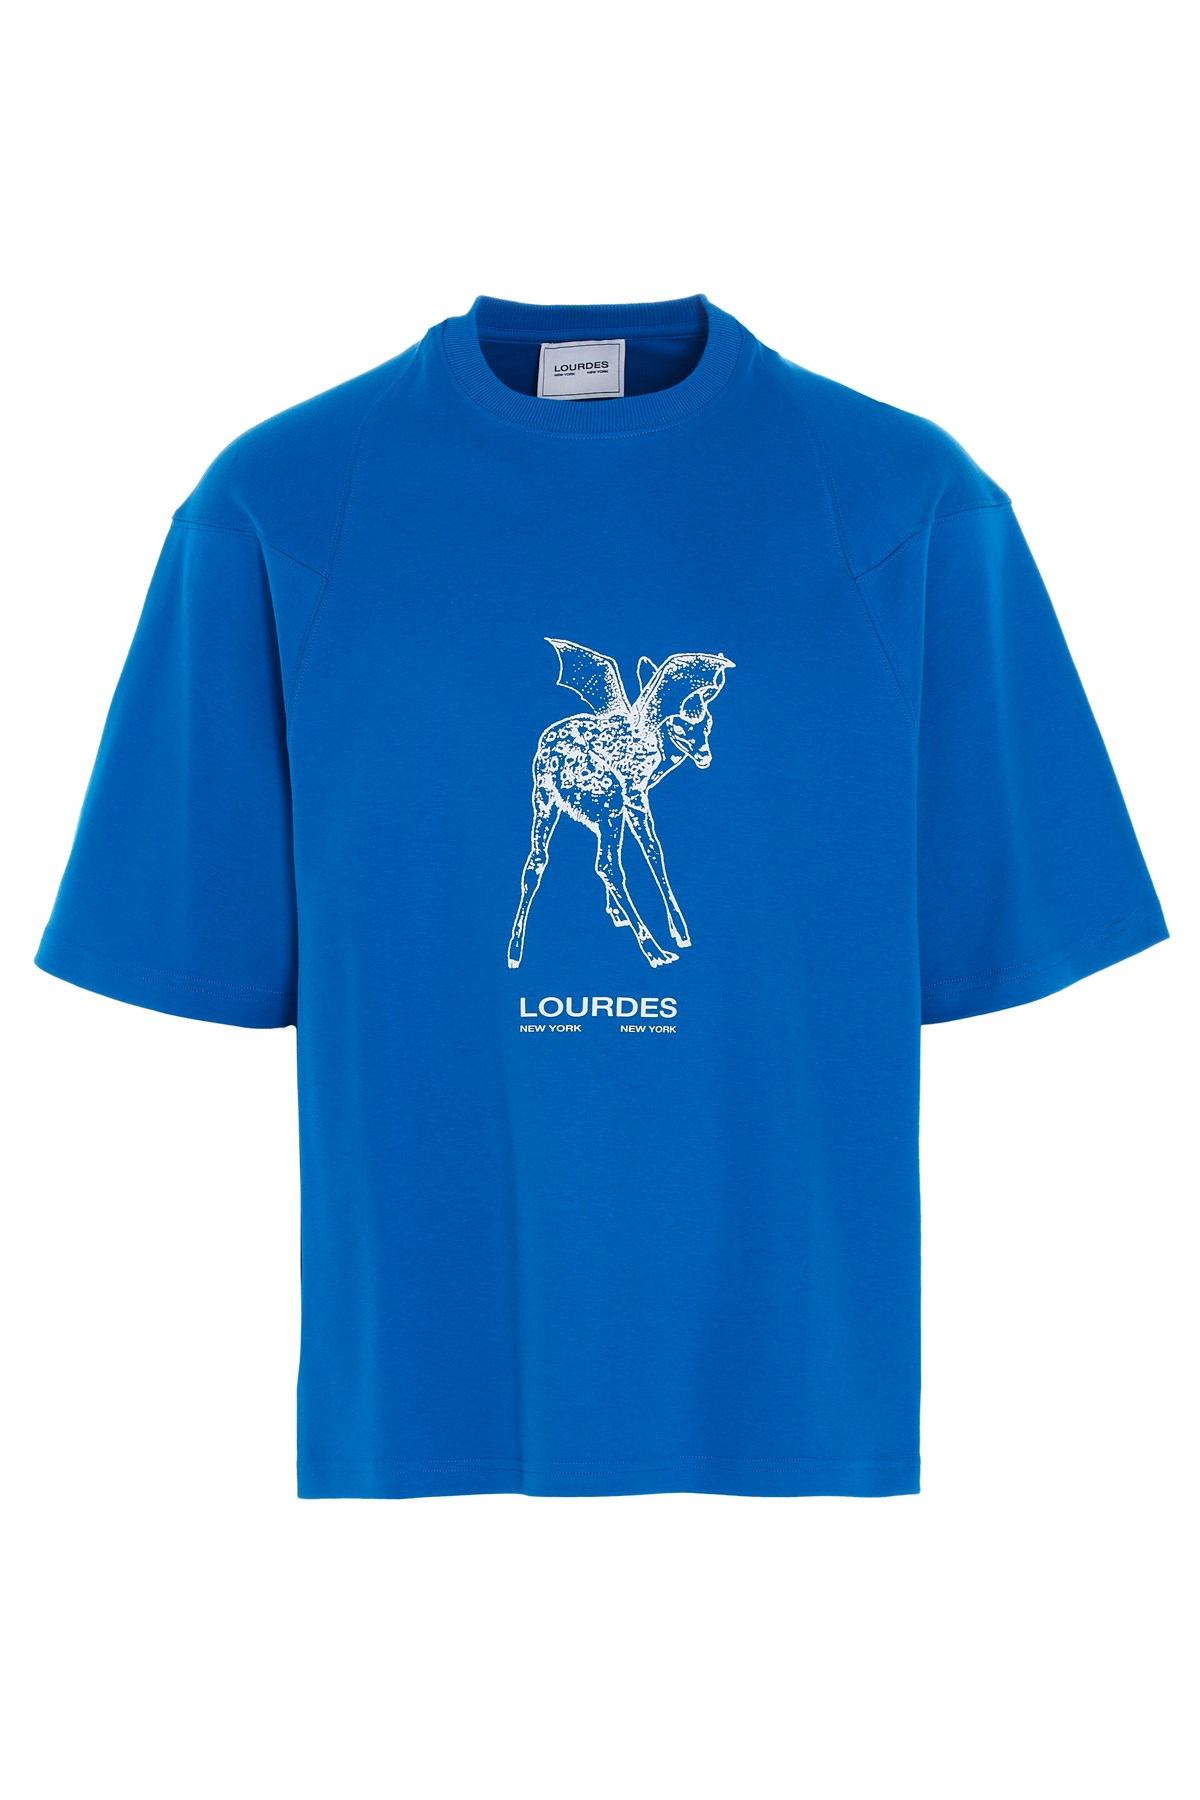 LOURDES NEW YORK T-Shirt Aus Baumwolle Bedruckt